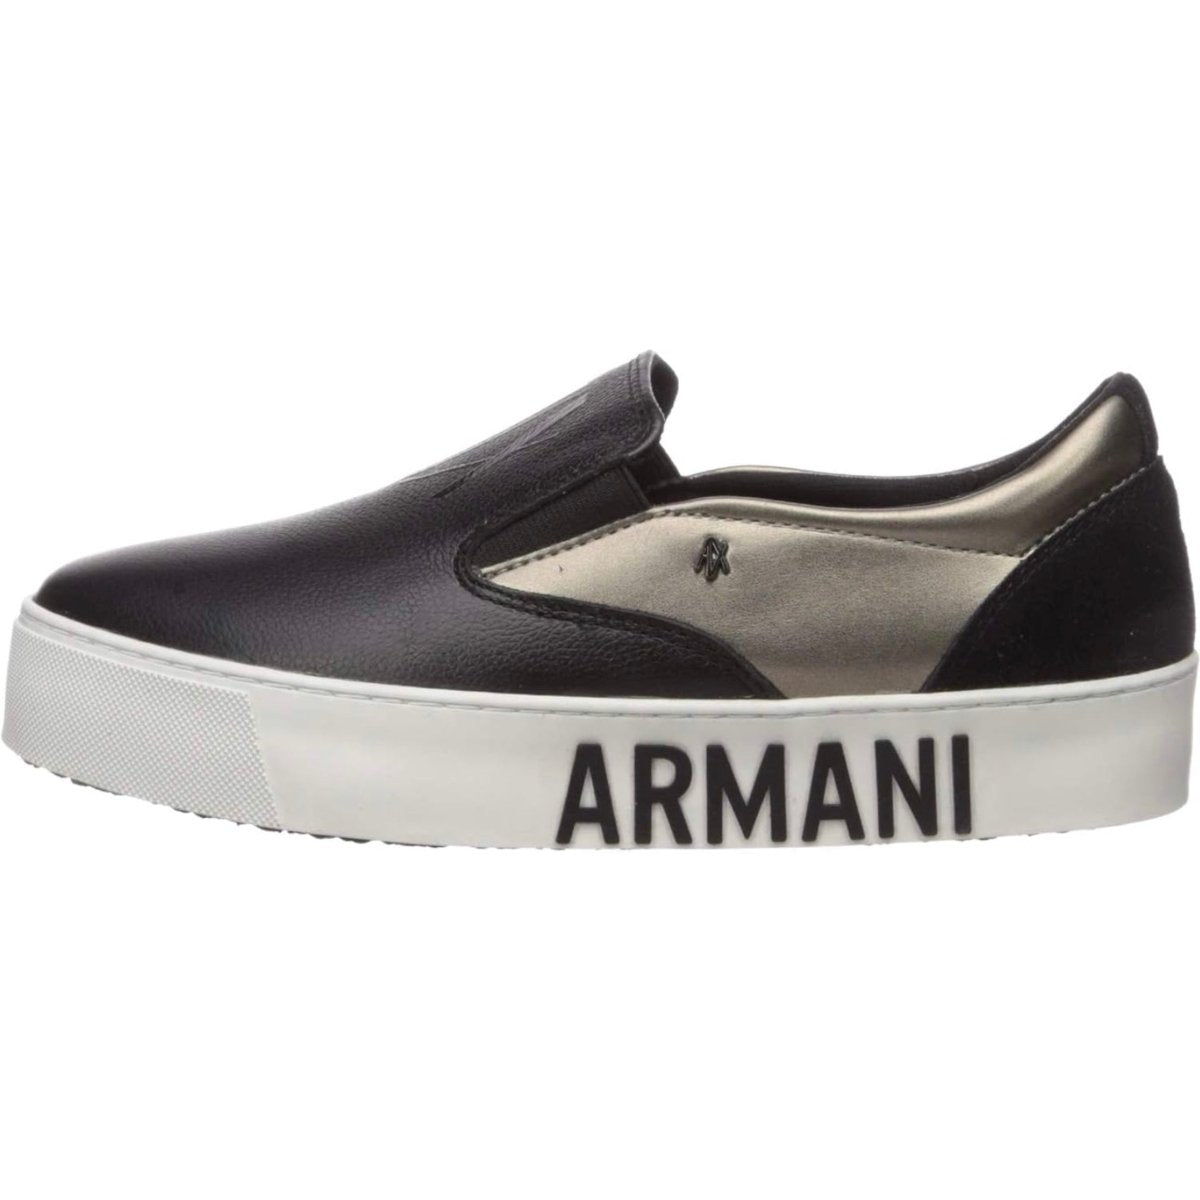 Sneakers slip-on - Armani Exchange - Taxi Bleu Moda Donna - 2000000078007